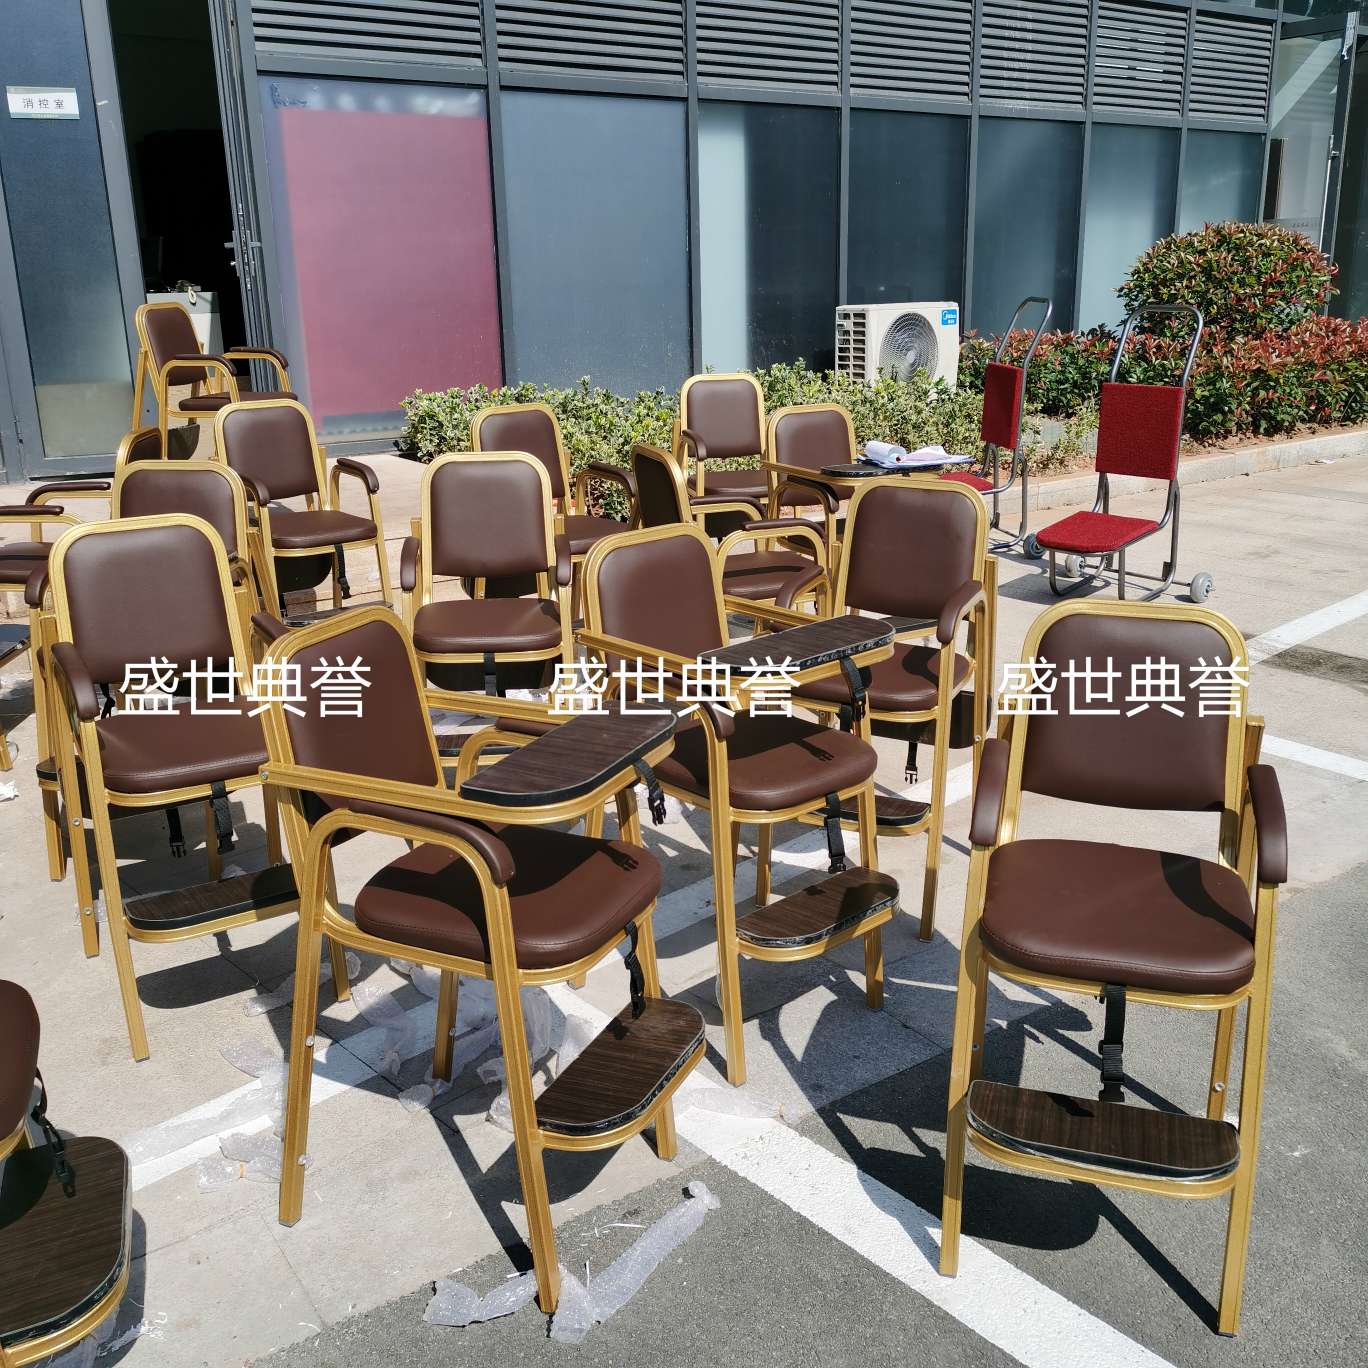 上海五星级酒店宴会厅宝宝餐椅饭店包厢儿童就餐椅子铝合金宝宝椅详情图7